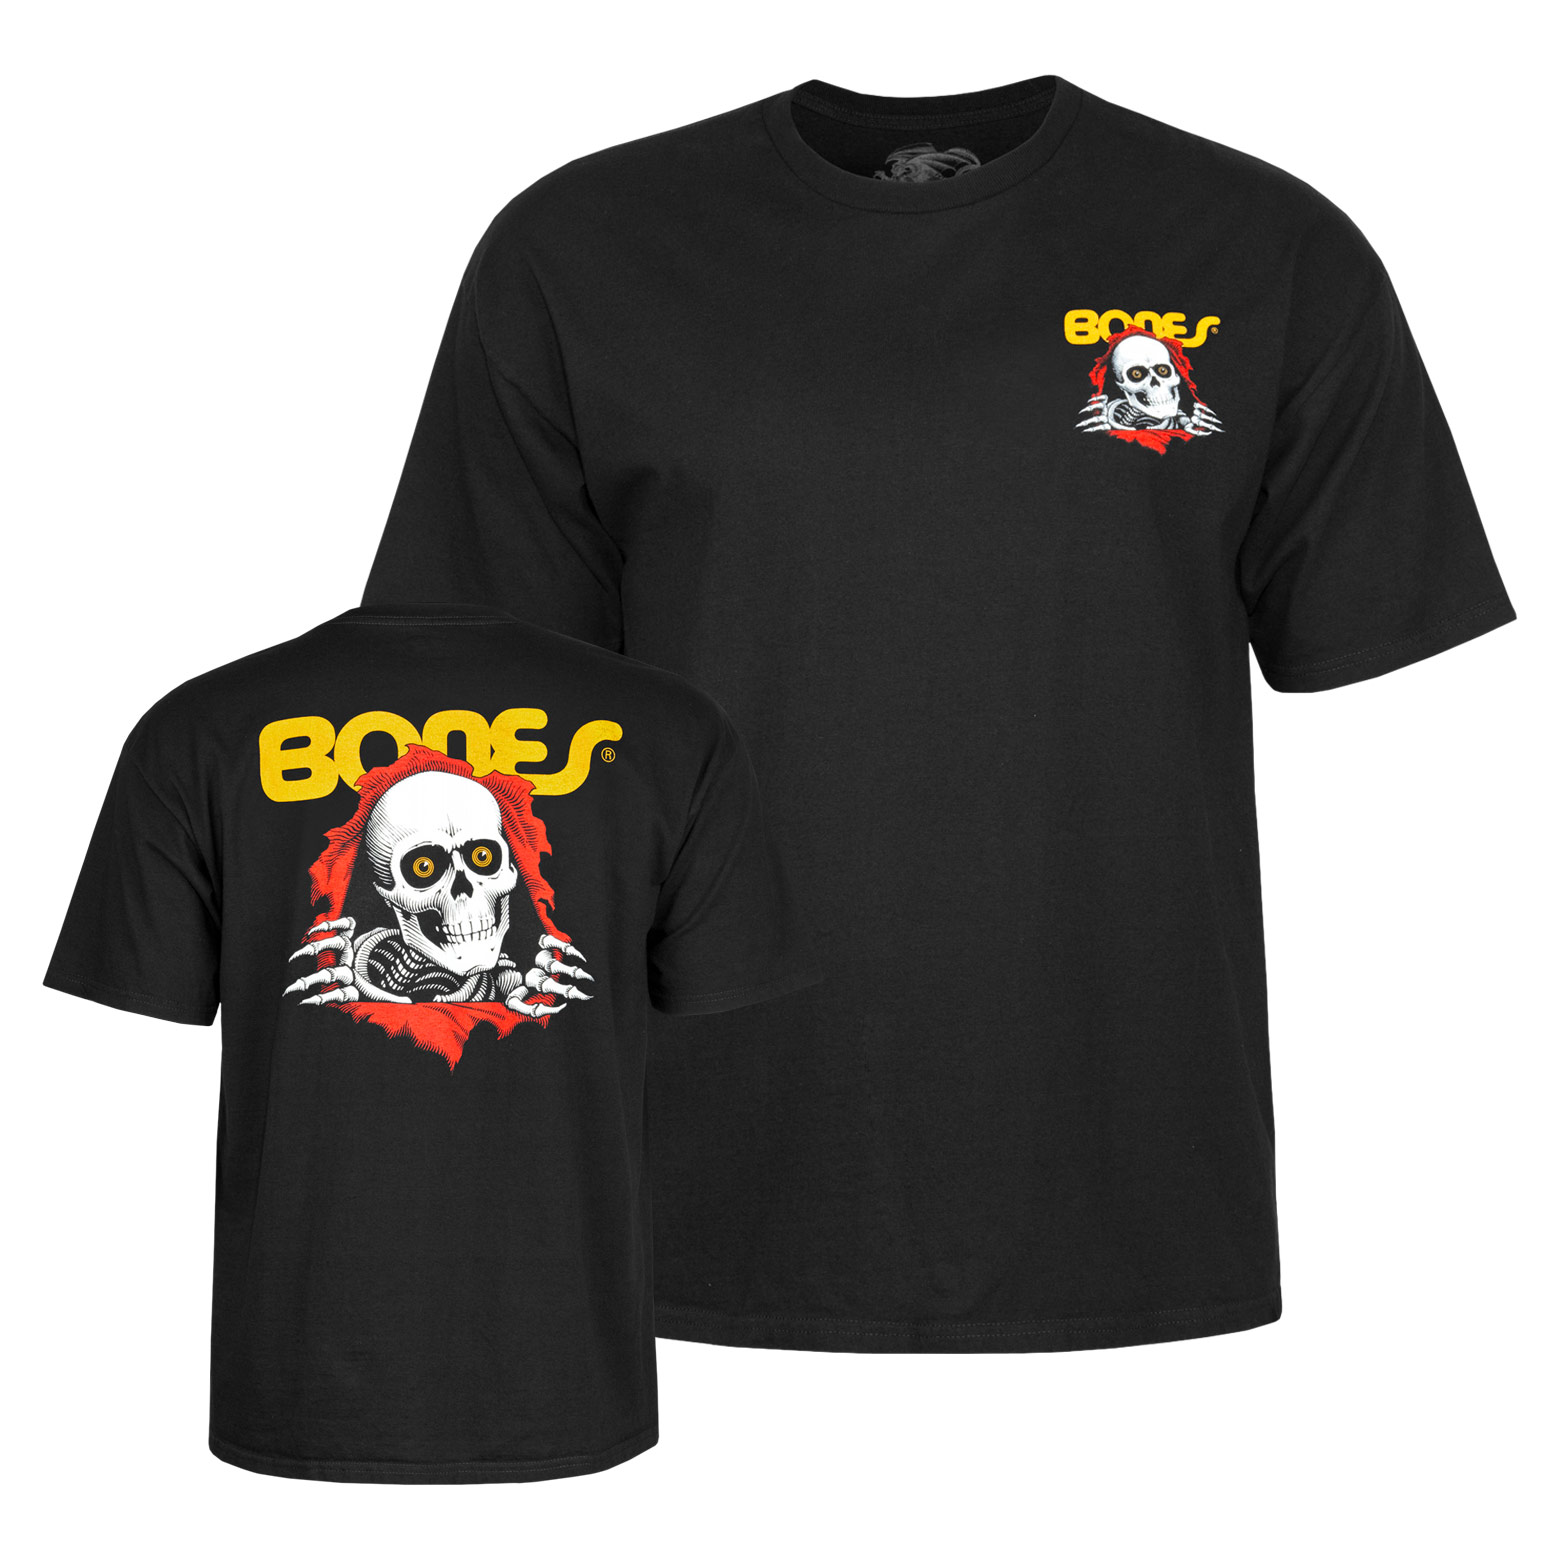 Powell Peralta T-Shirt Ripper (black)